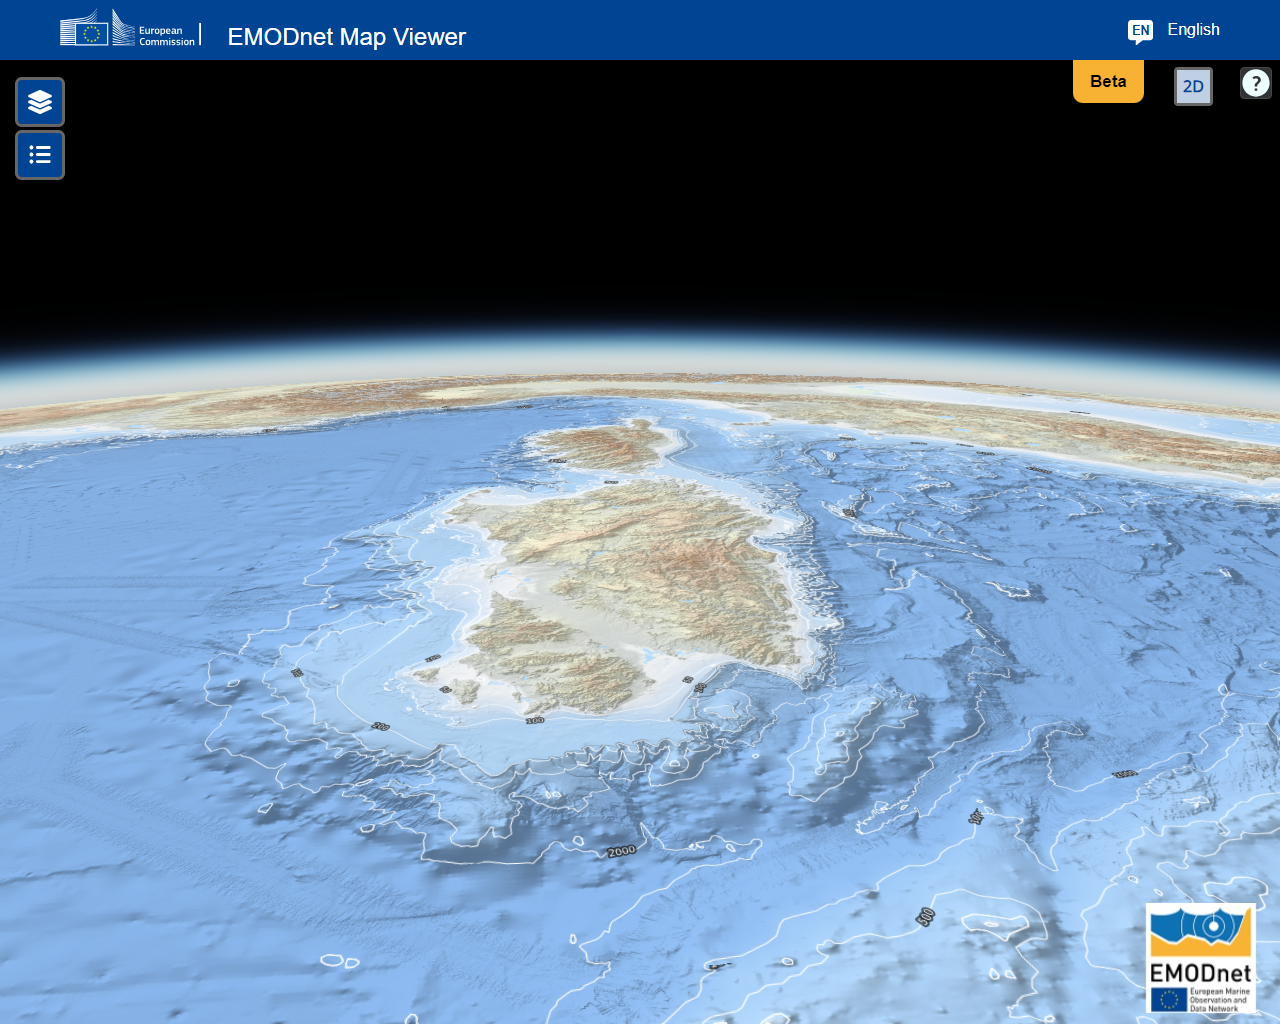 मेसोलिथिक अटलांटिक महासागर की 3डी बाथमेट्री जिसे अब भूमध्य सागर के नाम से जाना जाता है 4